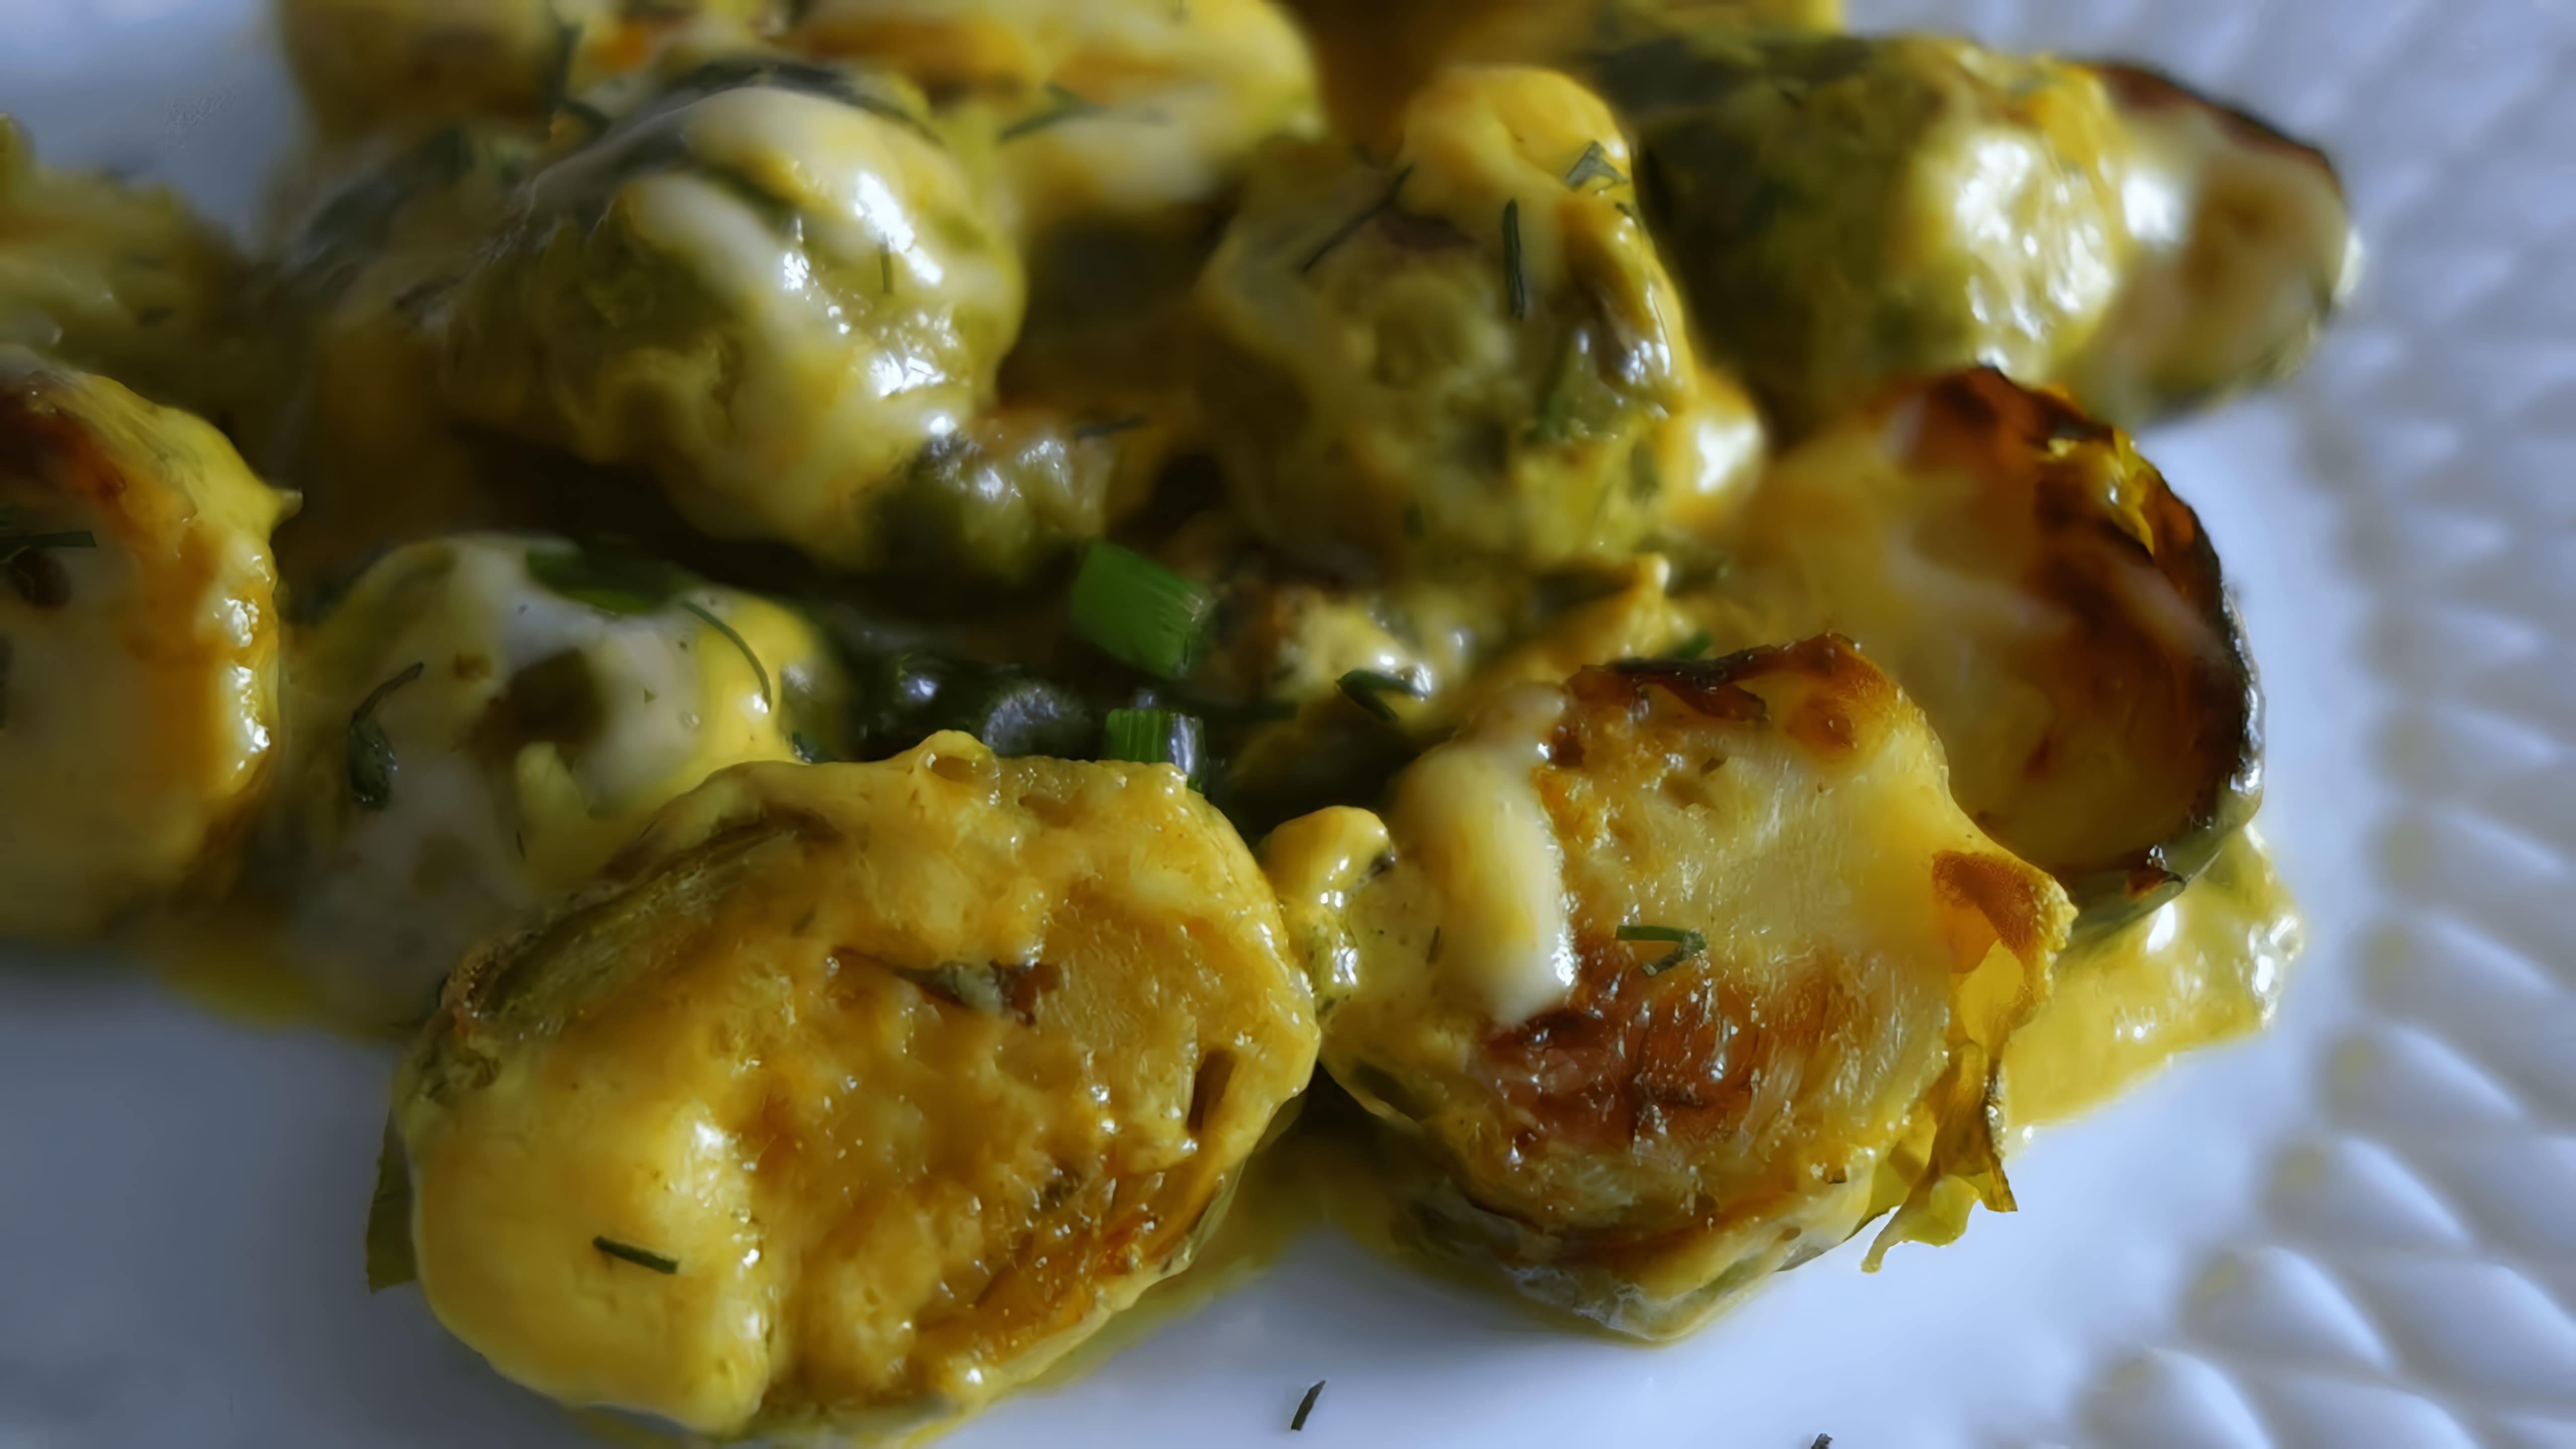 Брюссельская капуста в сливочном соусе - это вкусное и полезное блюдо, которое можно приготовить дома